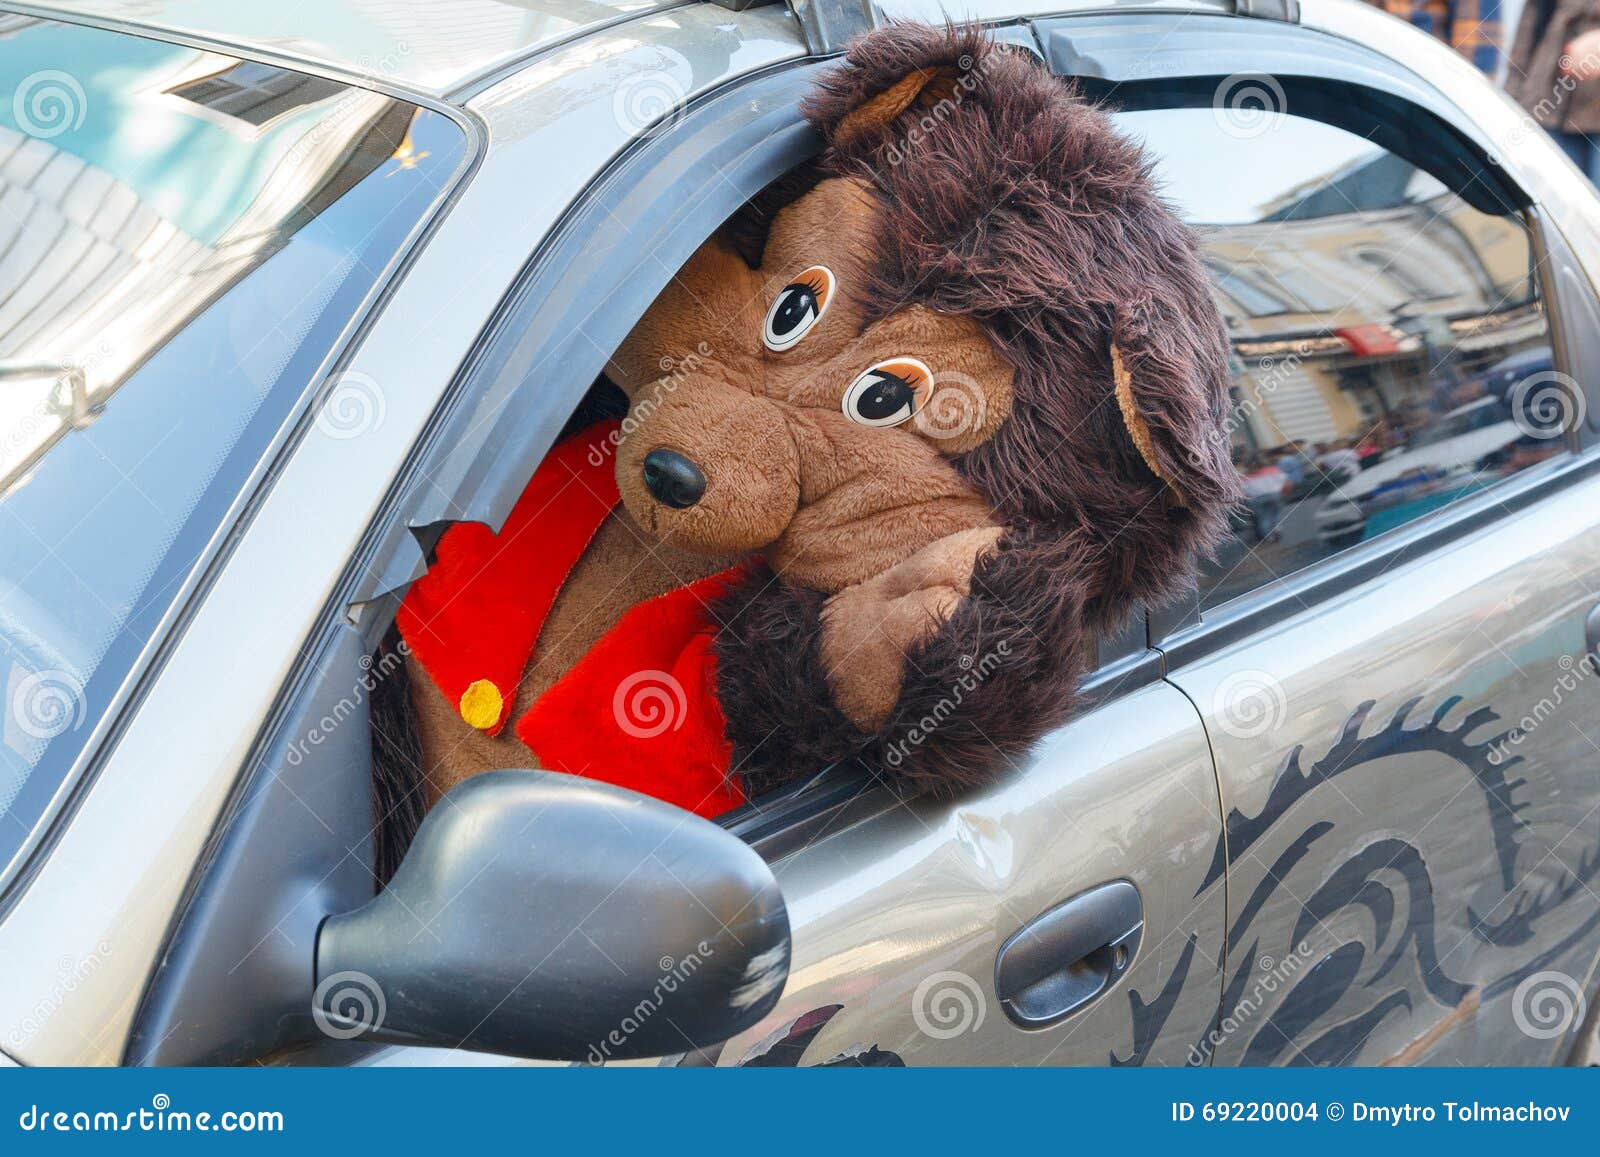 teddy in car